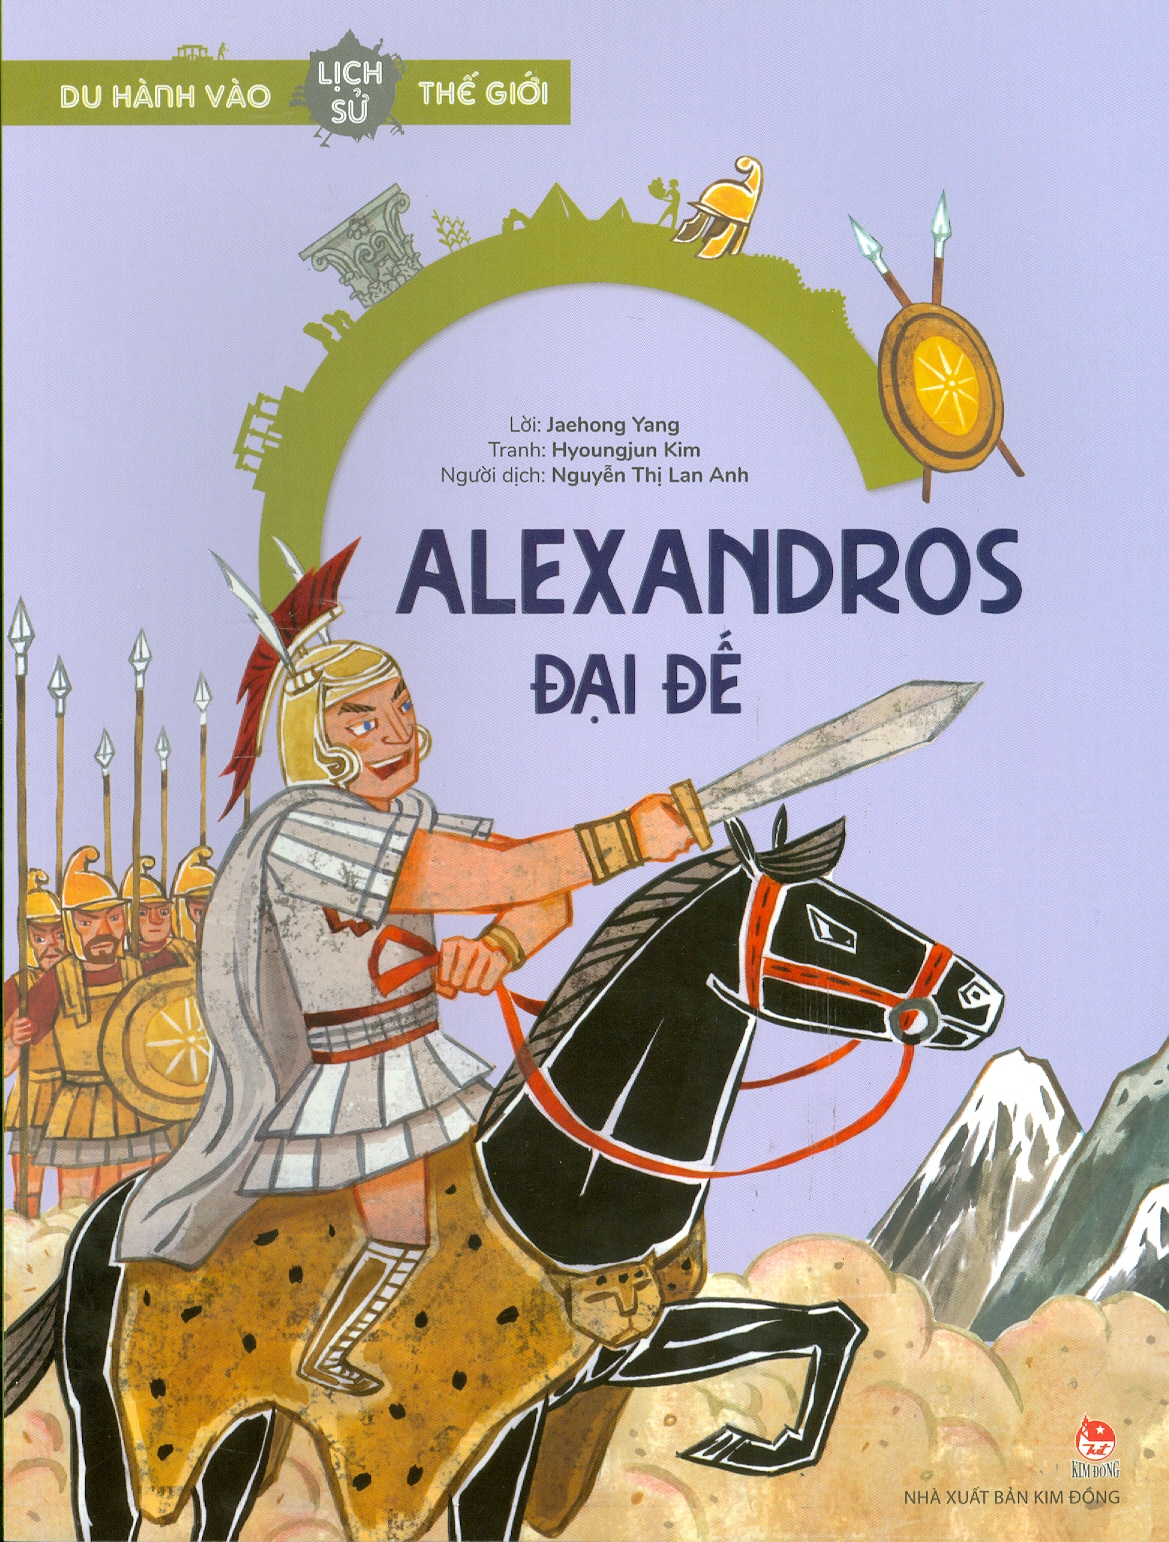 Du Hành Vào Lịch Sử Thế Giới - Alexandros Đại Đế